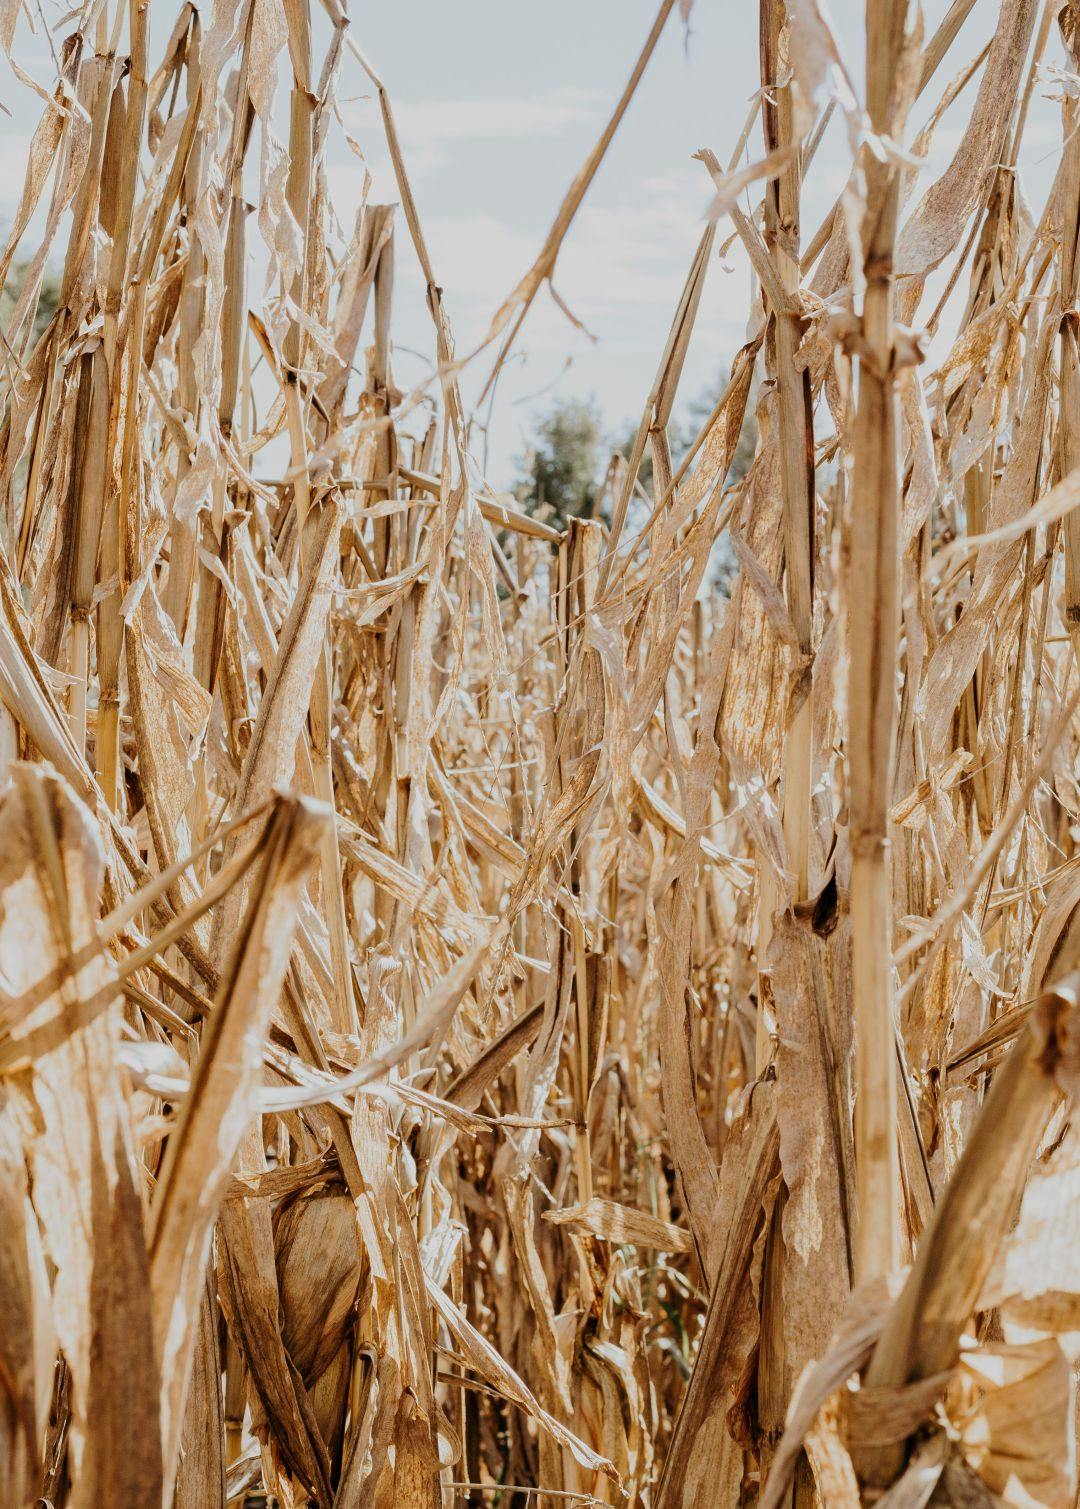 A corn field in Wichita